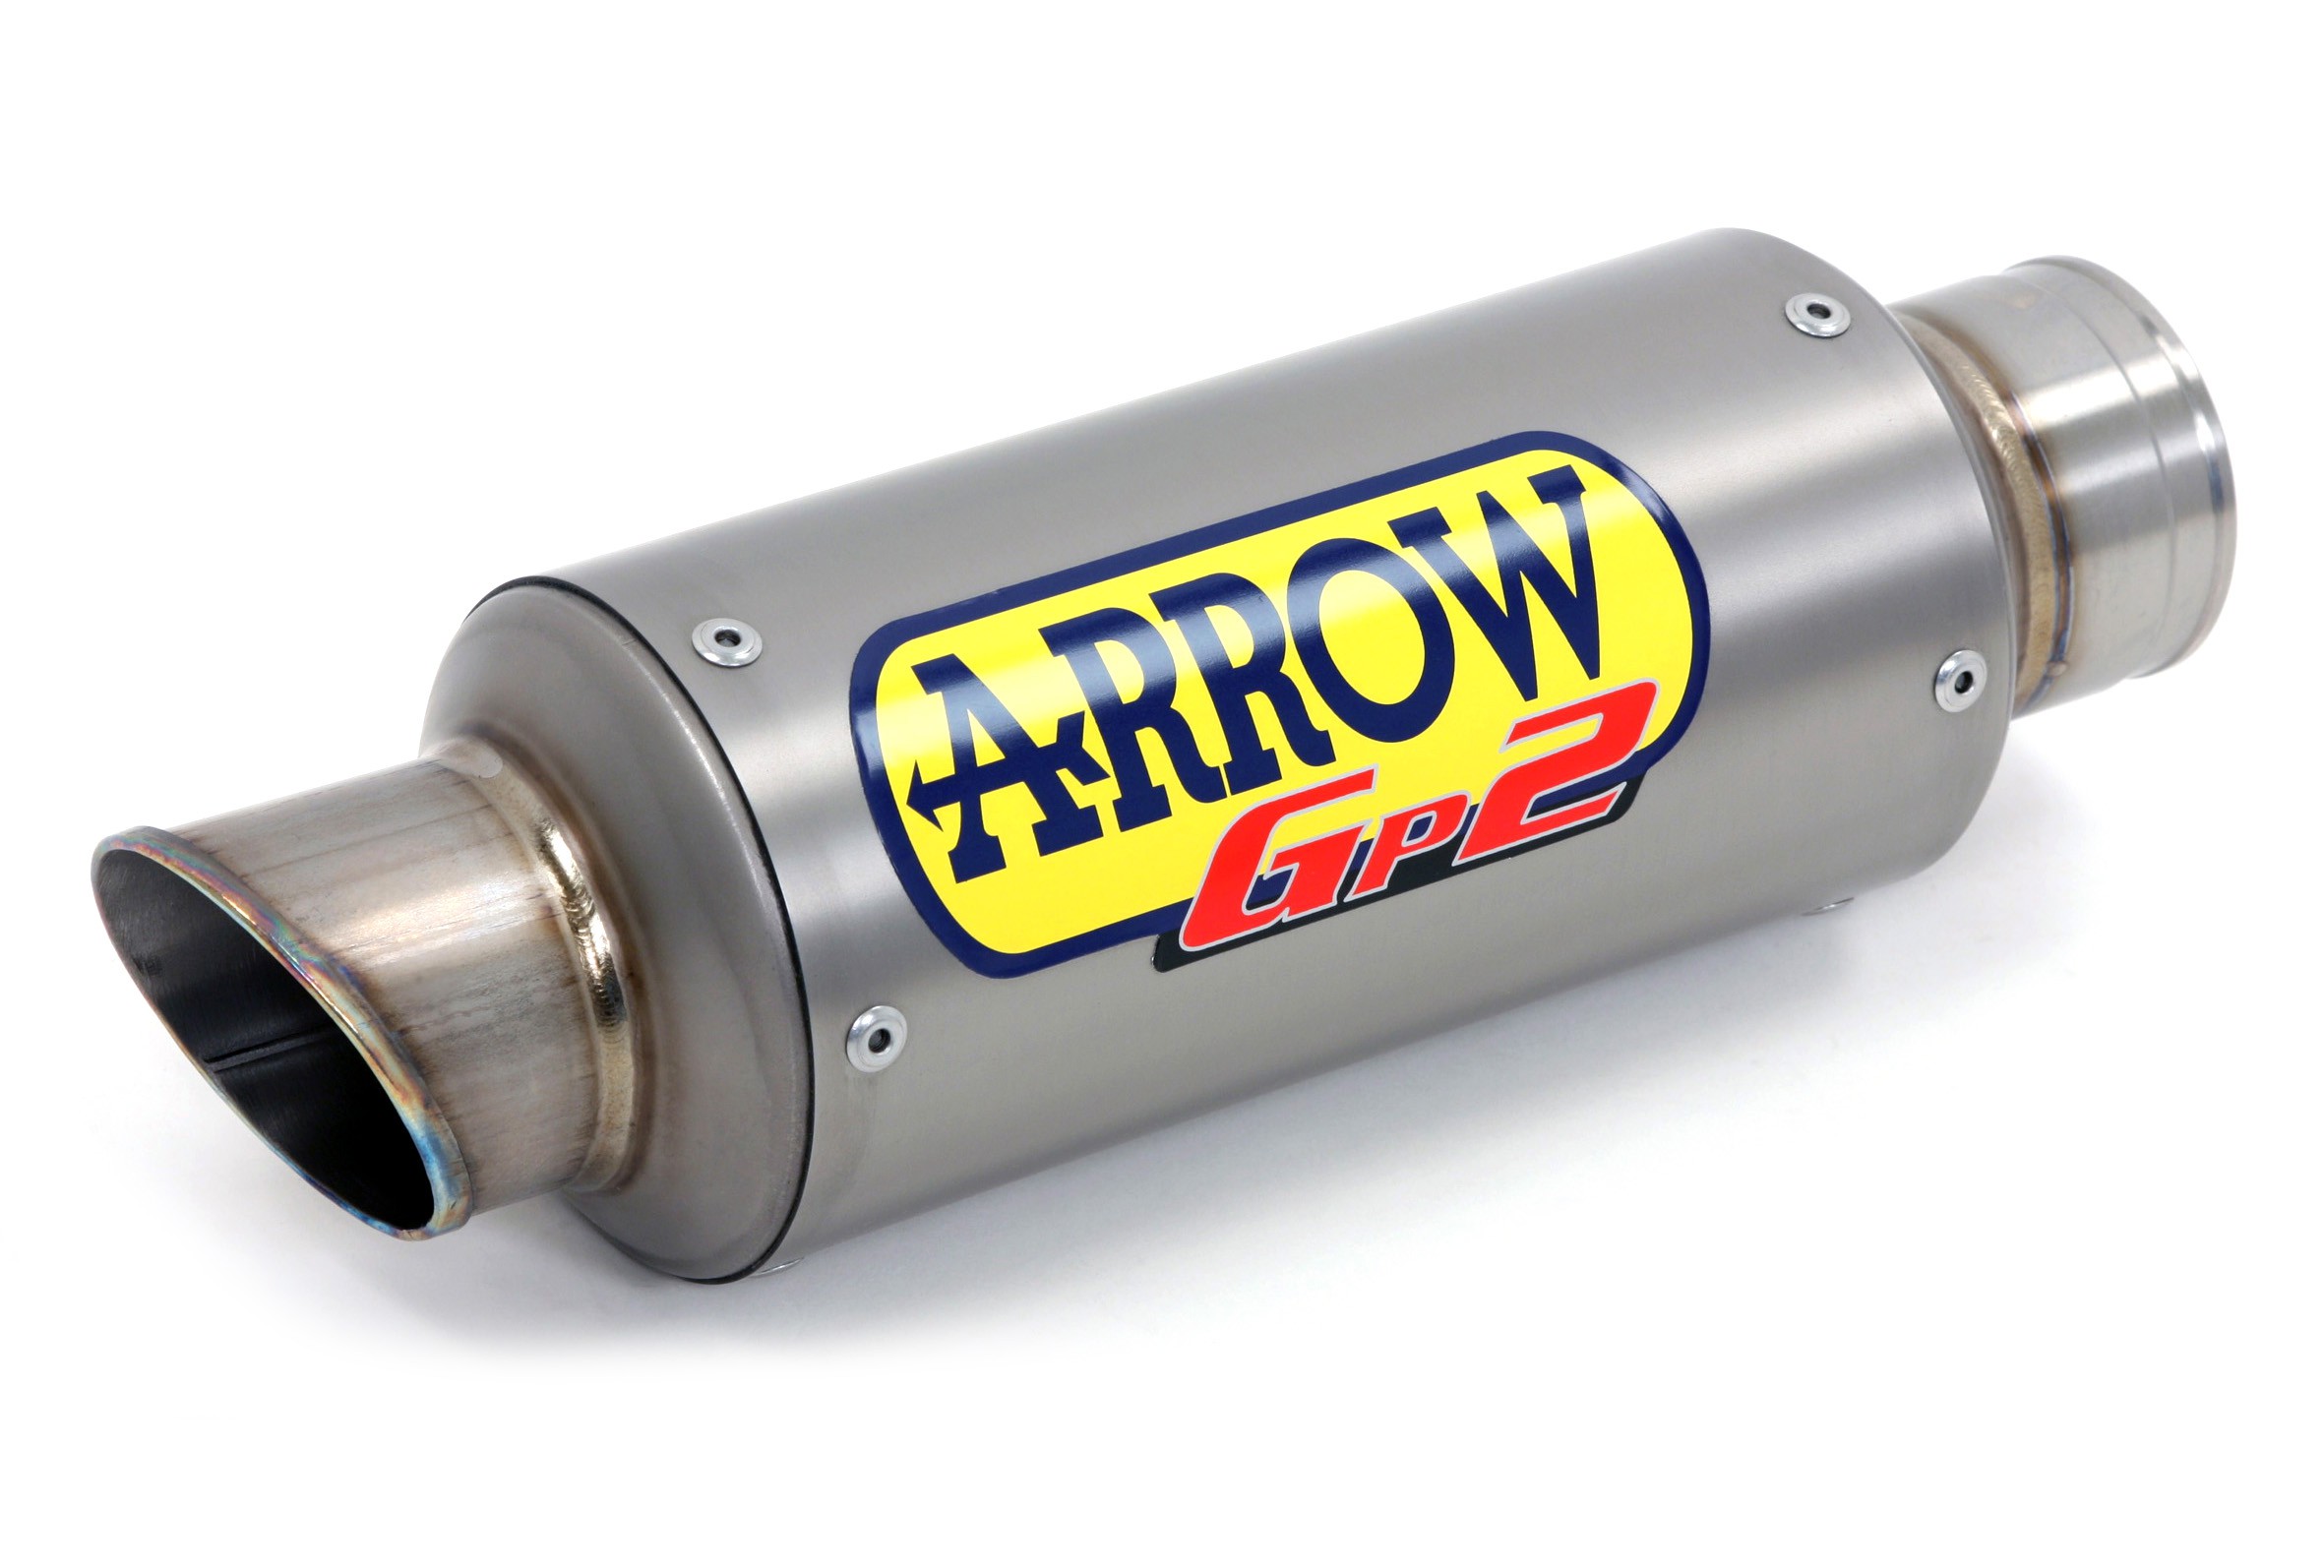 Silencieux ARROW GP2 pour Crossrunner 800 de 2015